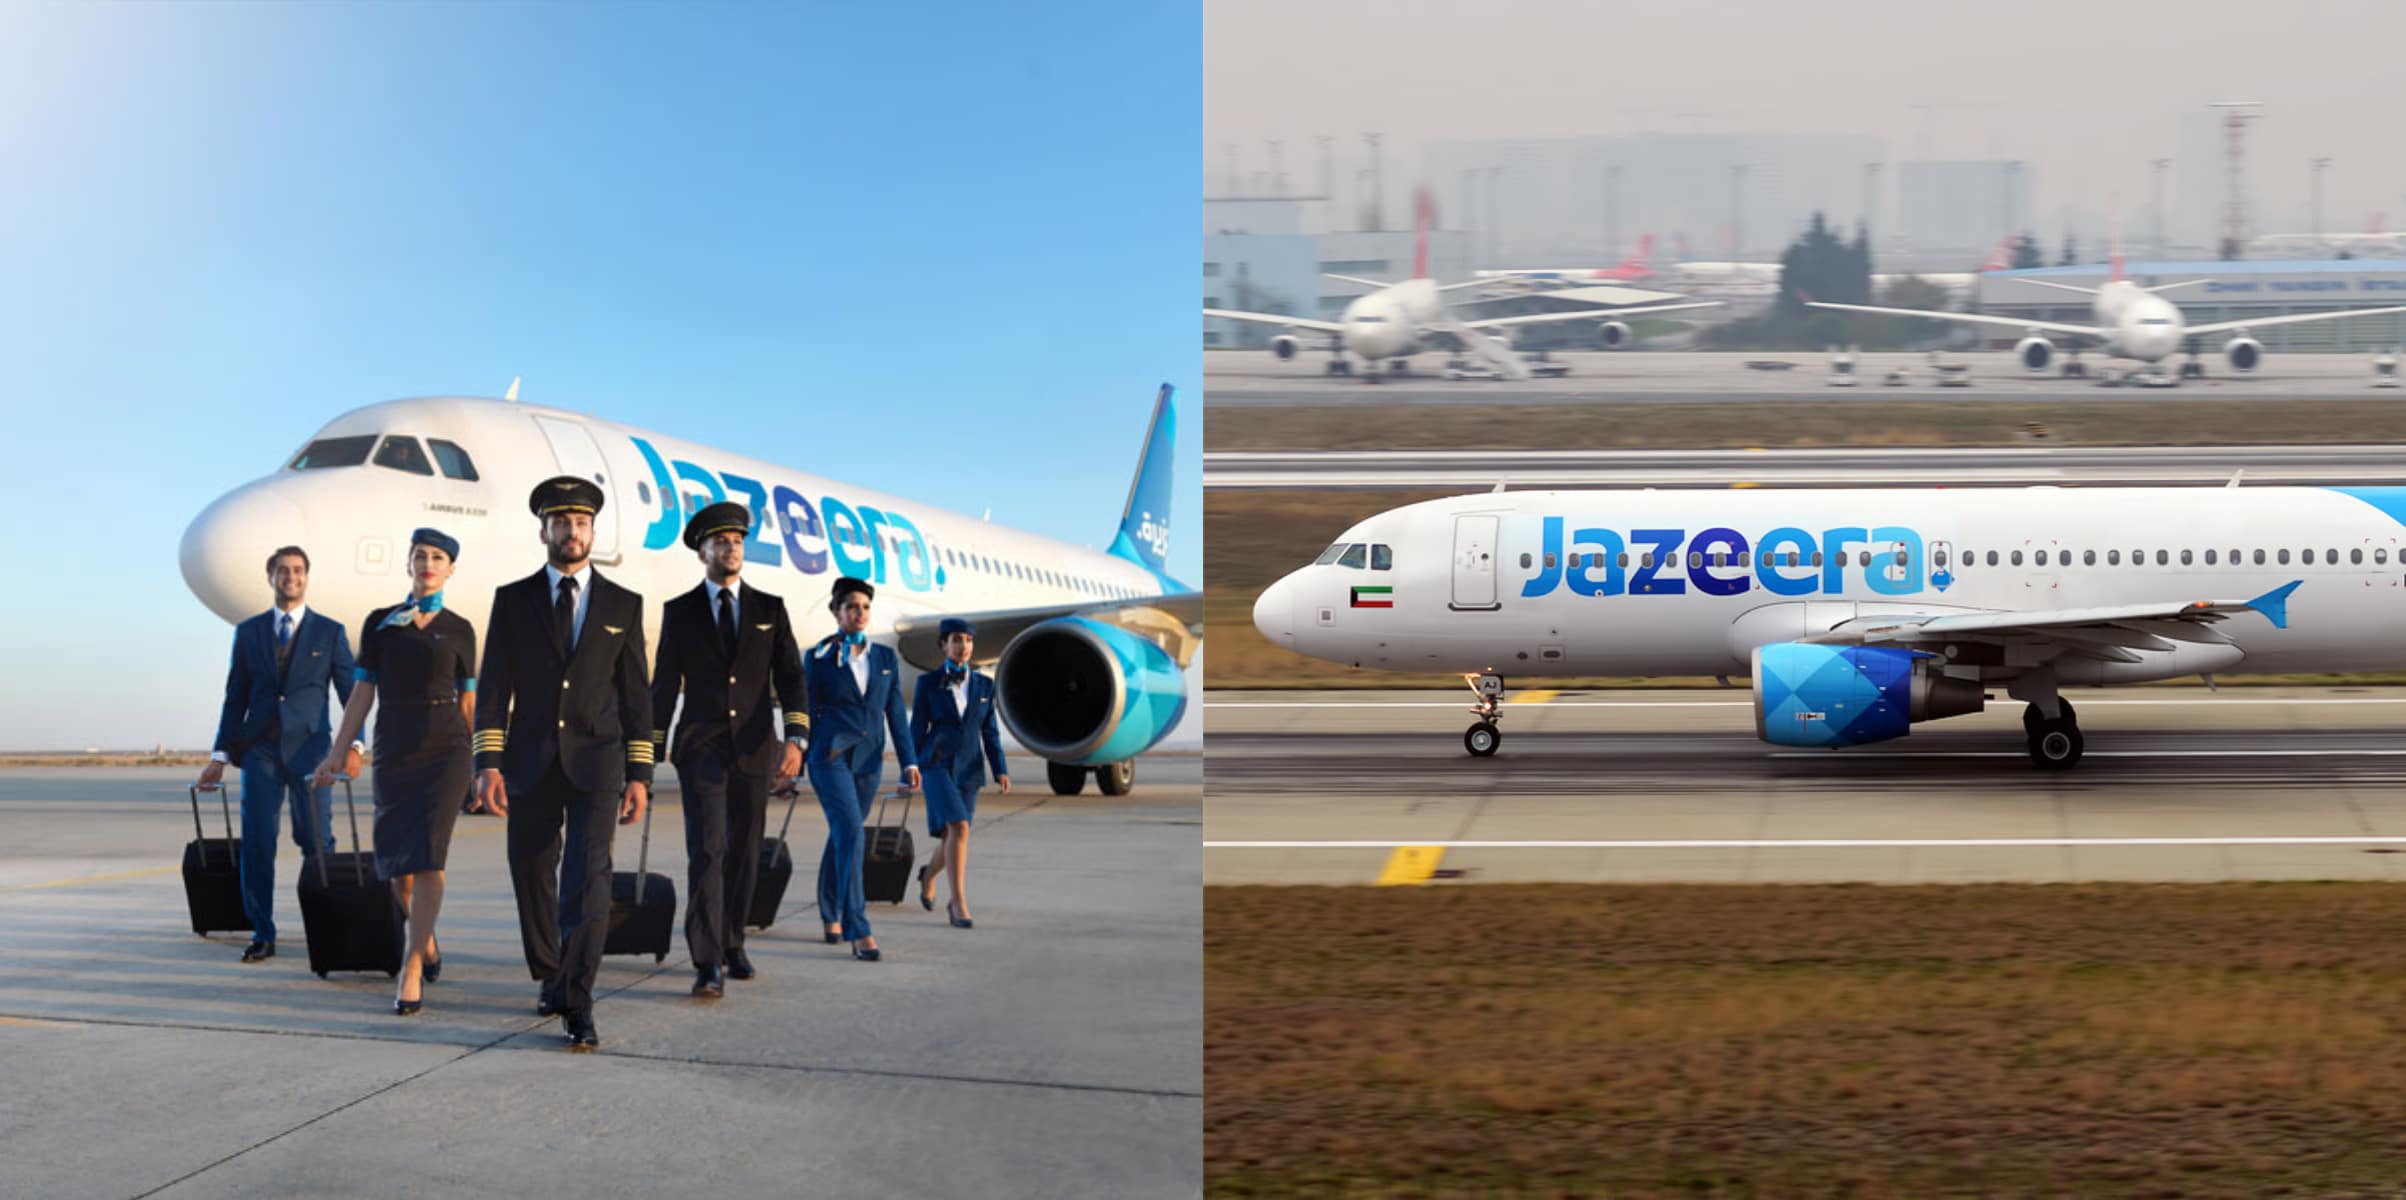 شركة طيران الجزيرة في الكويت تعلن تعافي أدائها وعودة الربحية في الربع الثالث من 2021 watanserb.com